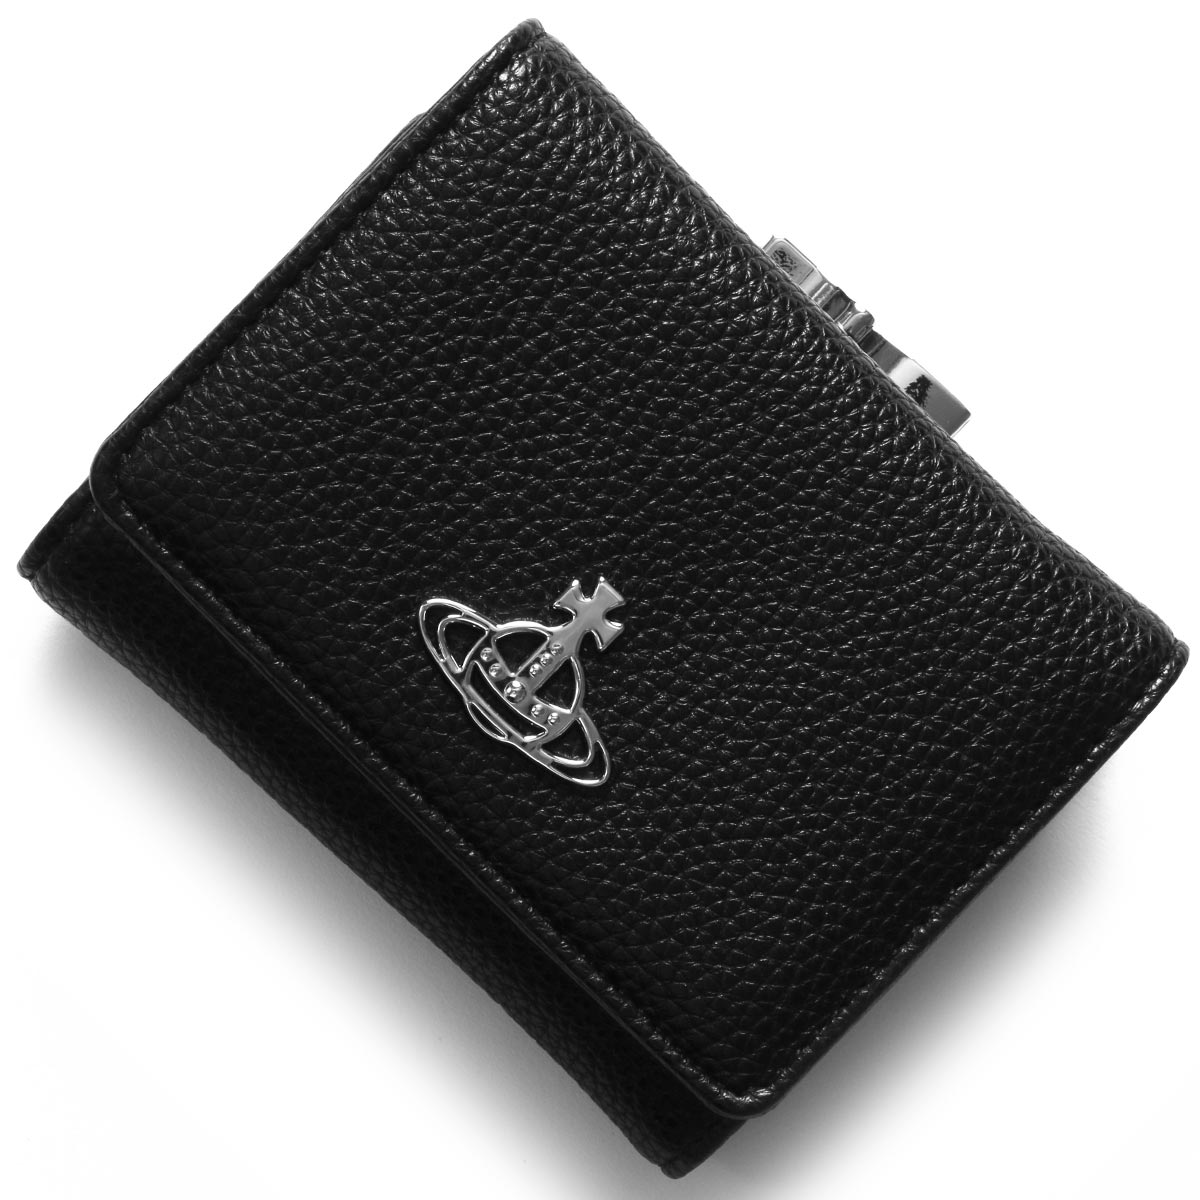 7,399円美品 ヴィヴィアンウエストウッド 三つ折り財布 ジョアンナ レザー オーブ 黒